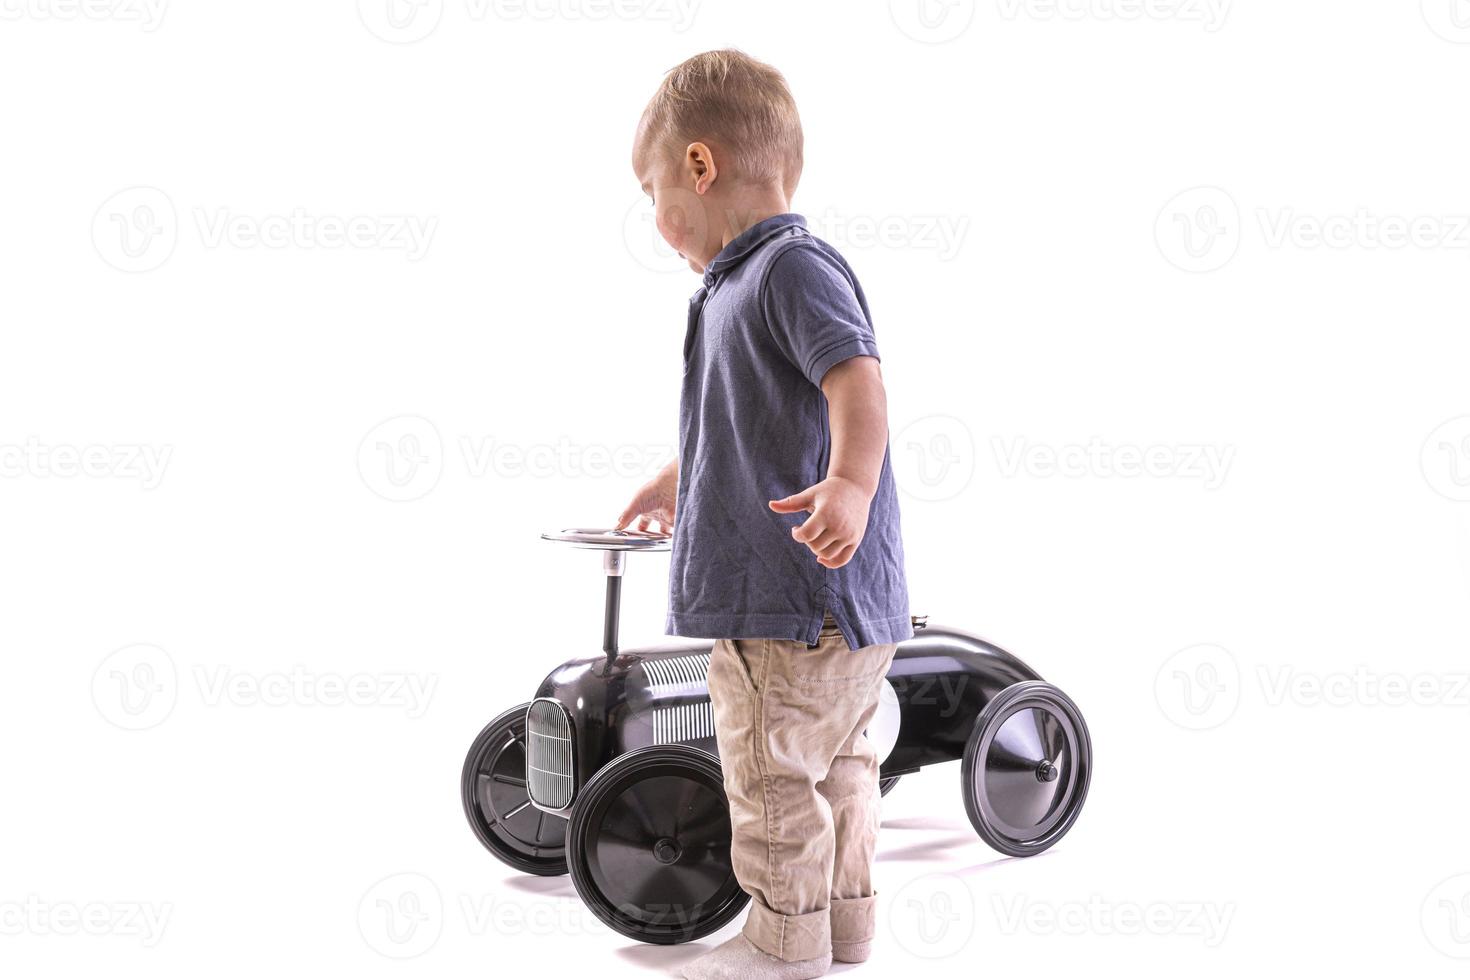 kleiner Junge, der Spielzeugauto im Retro-Stil fährt. Junge reitet altes Tretauto aus Metall für Kinder aus dem 19. Jahrhundert. isoliert auf weißem Hintergrund foto